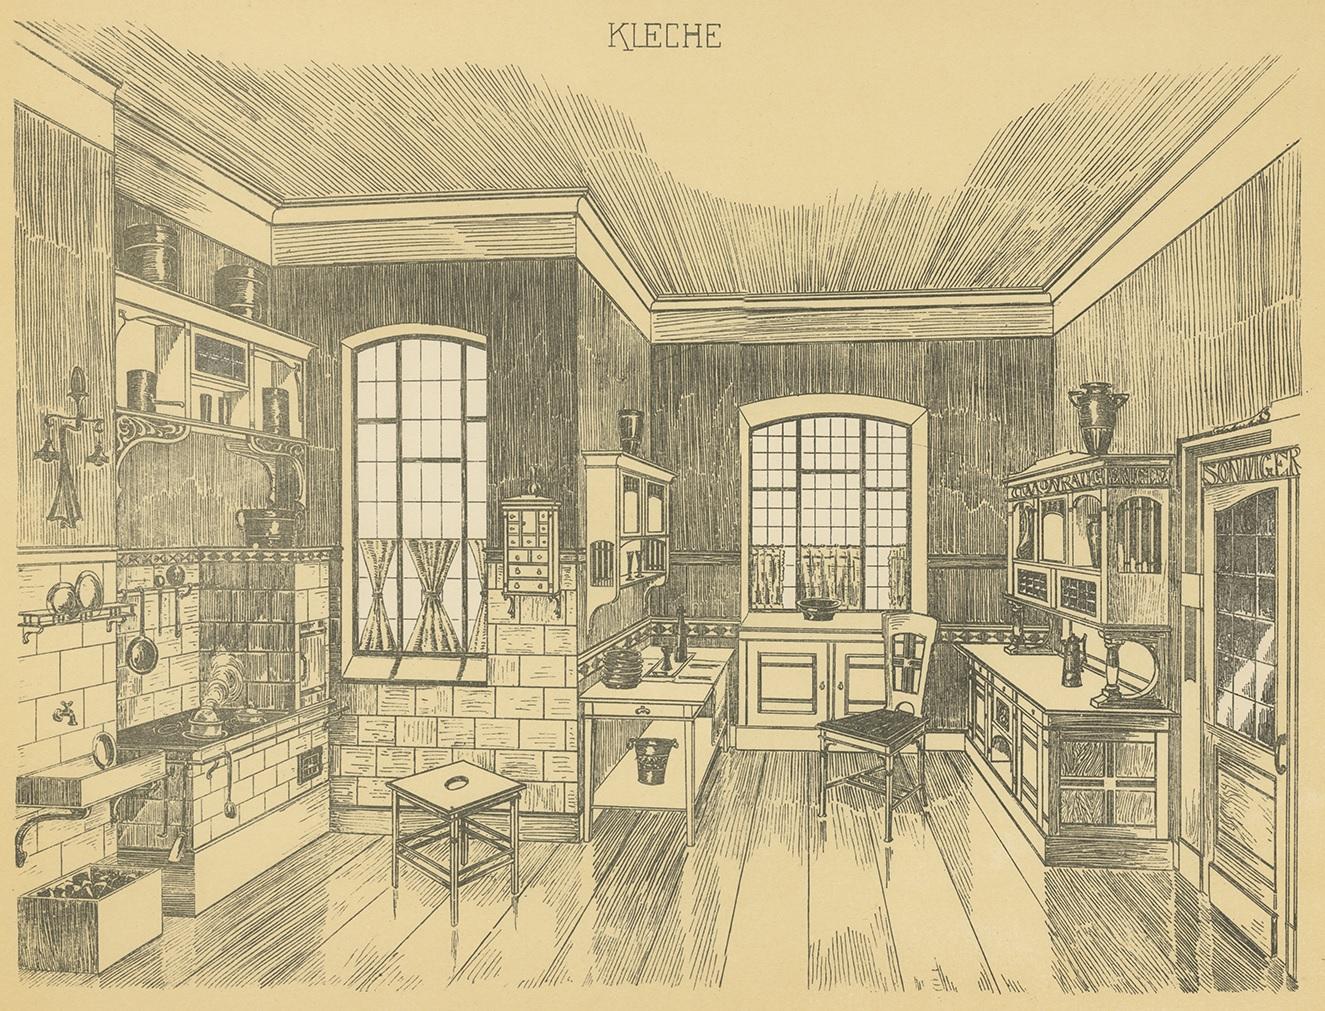 1910 kitchen